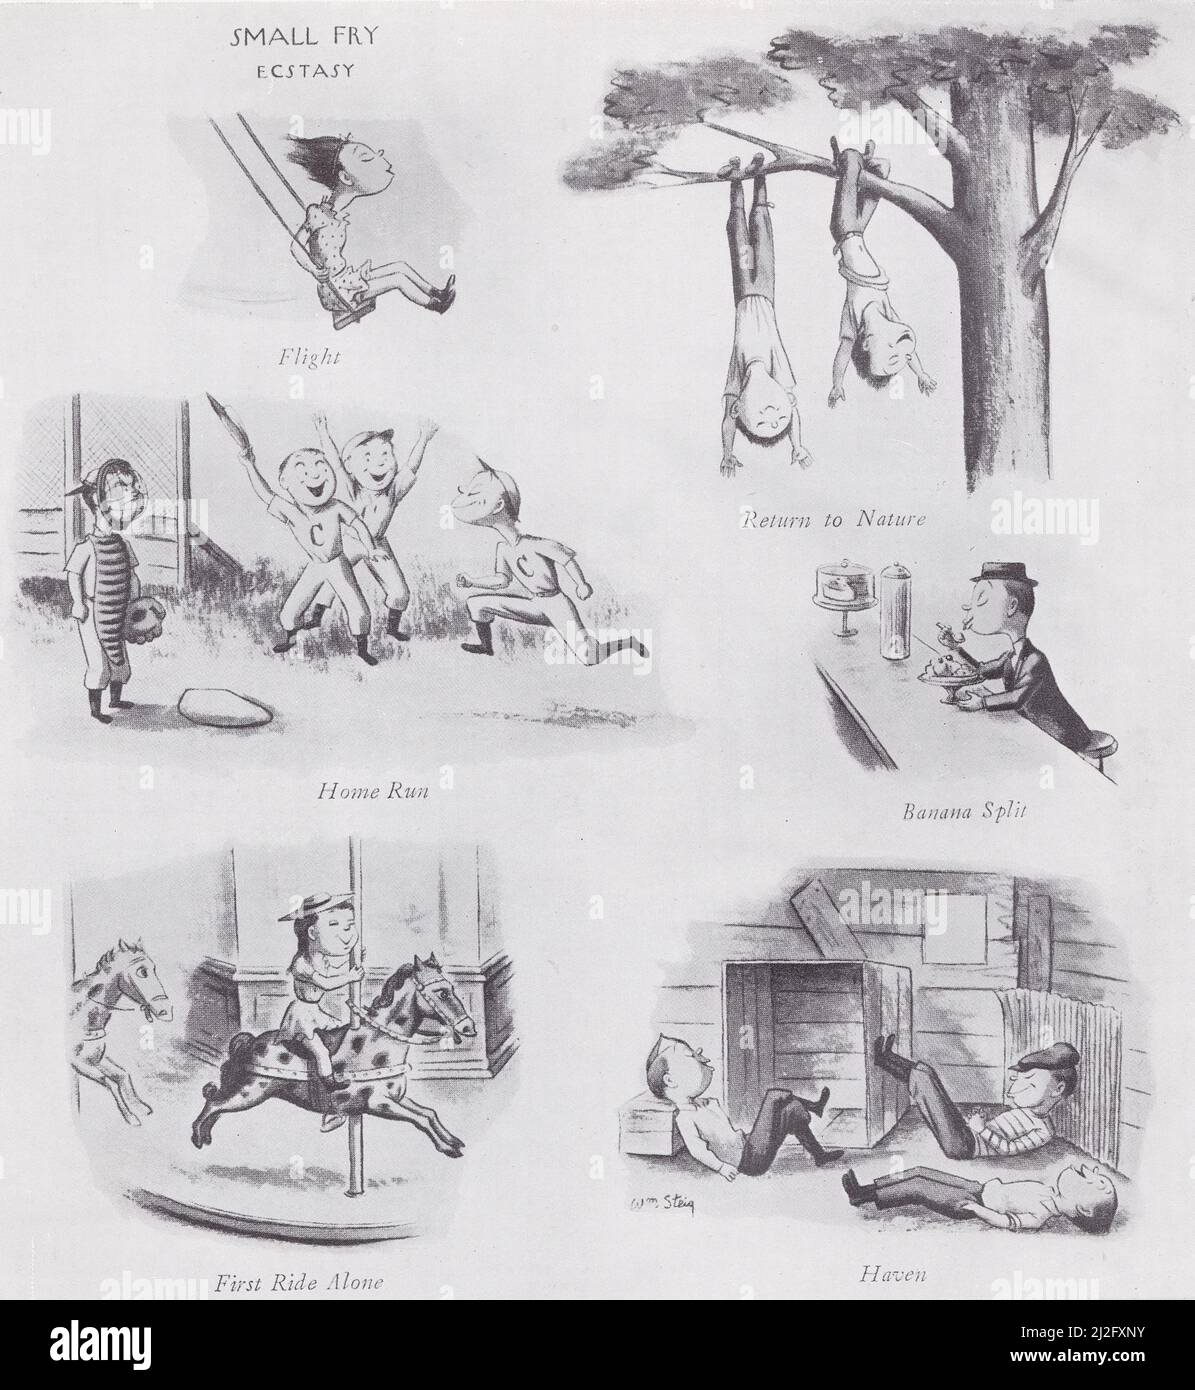 Illustration humoristique du magazine. La série 'Small Fry' - dessins de William Steig. Banque D'Images